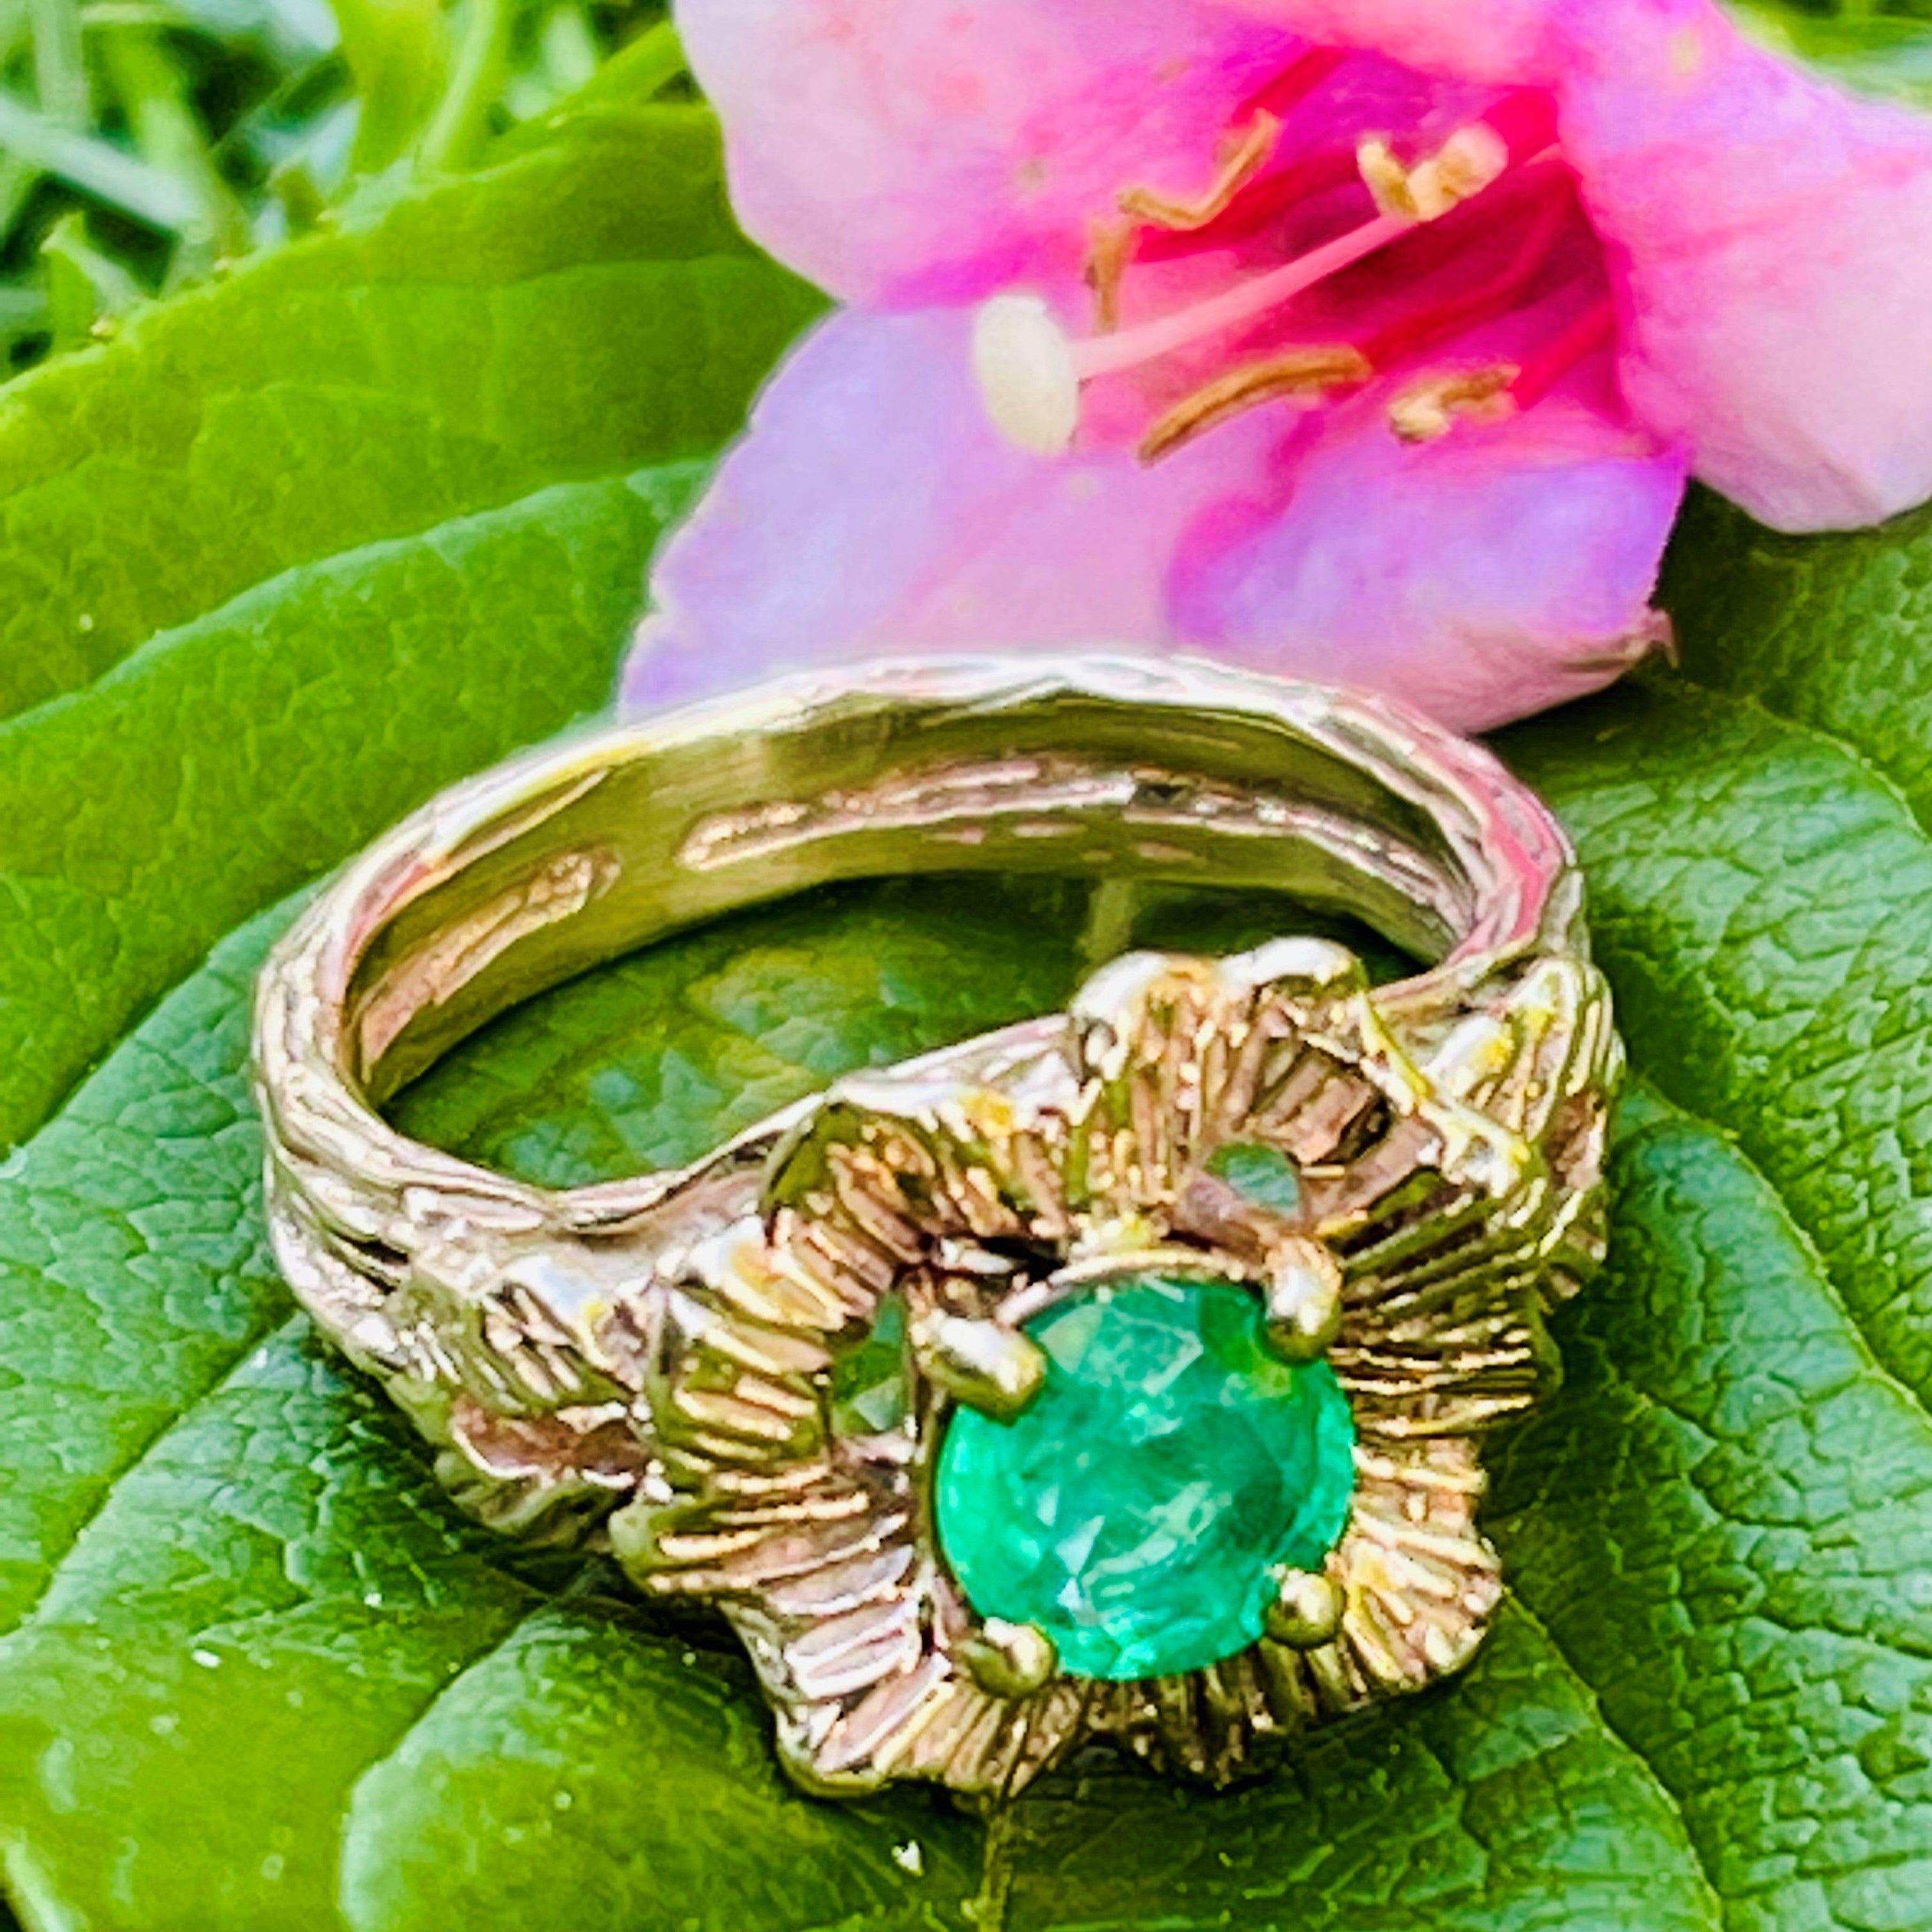 Emerald Flower Power Barked Dress Ring c.1970s